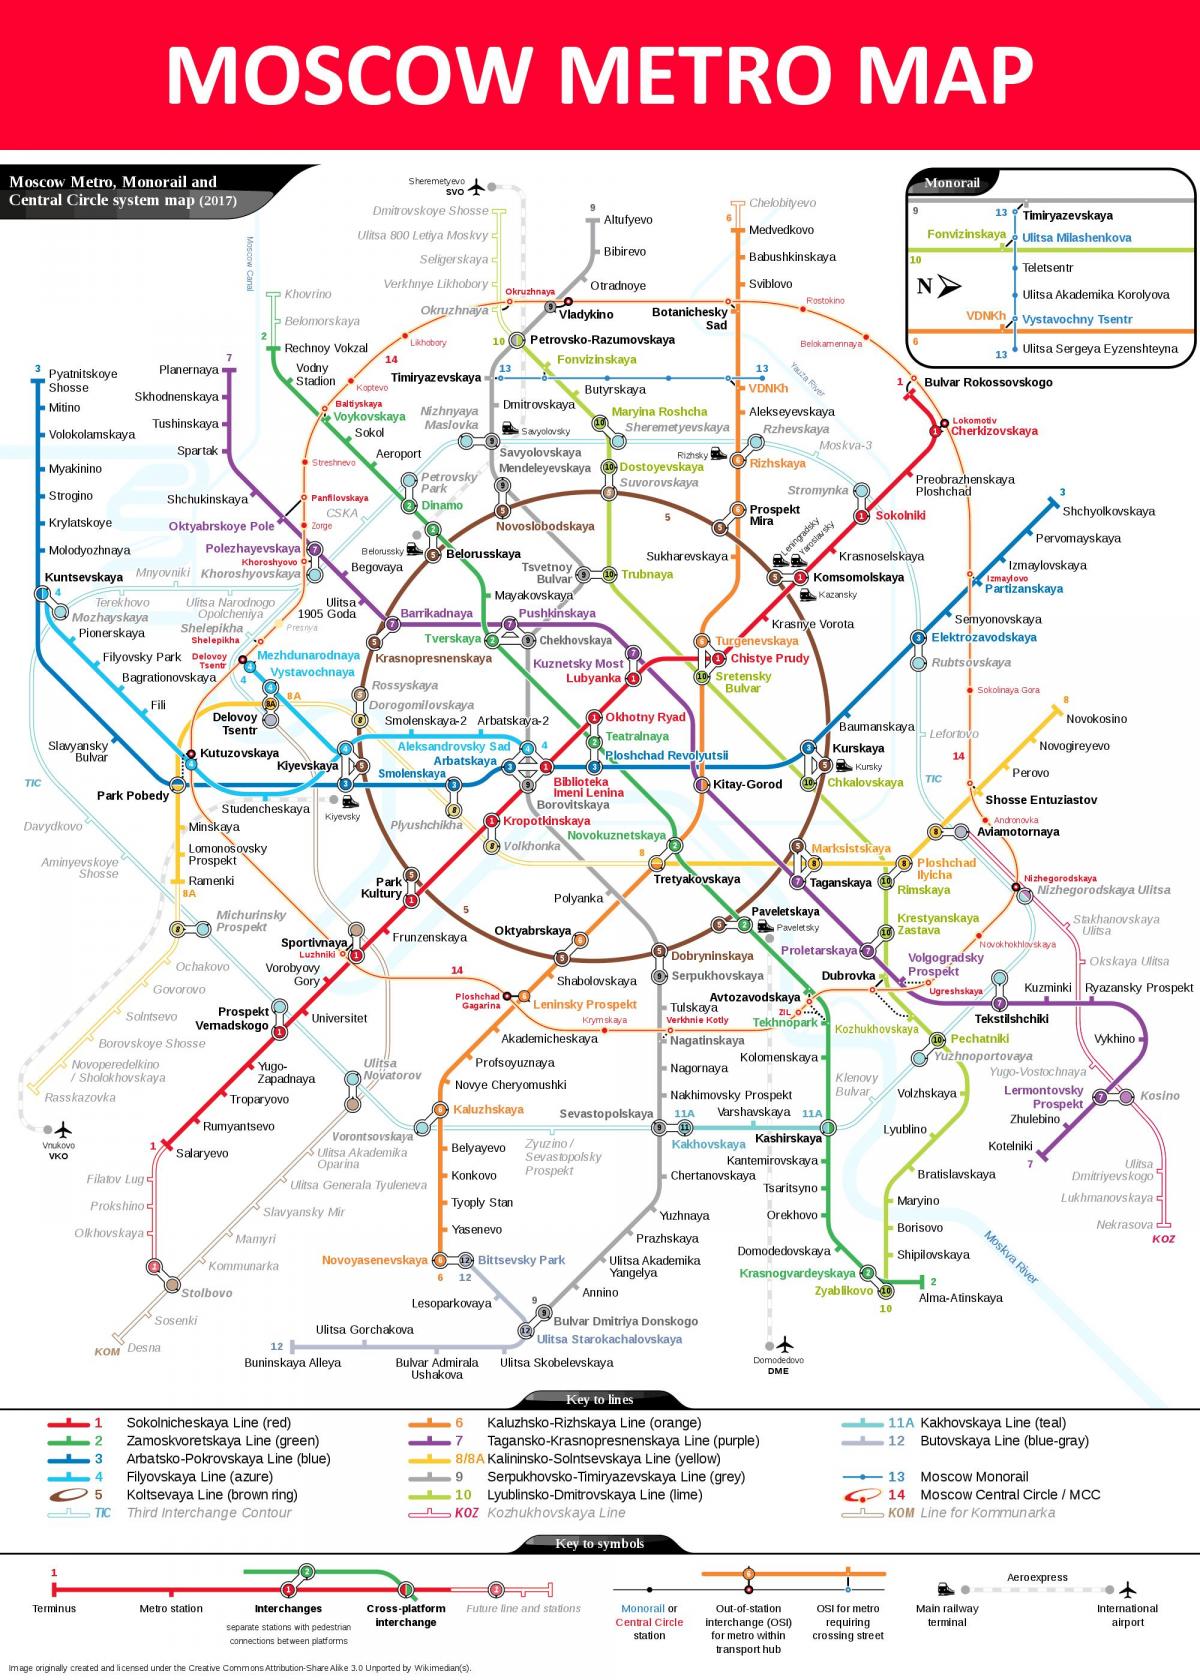 میٹرو اسٹیشن ماسکو کا نقشہ